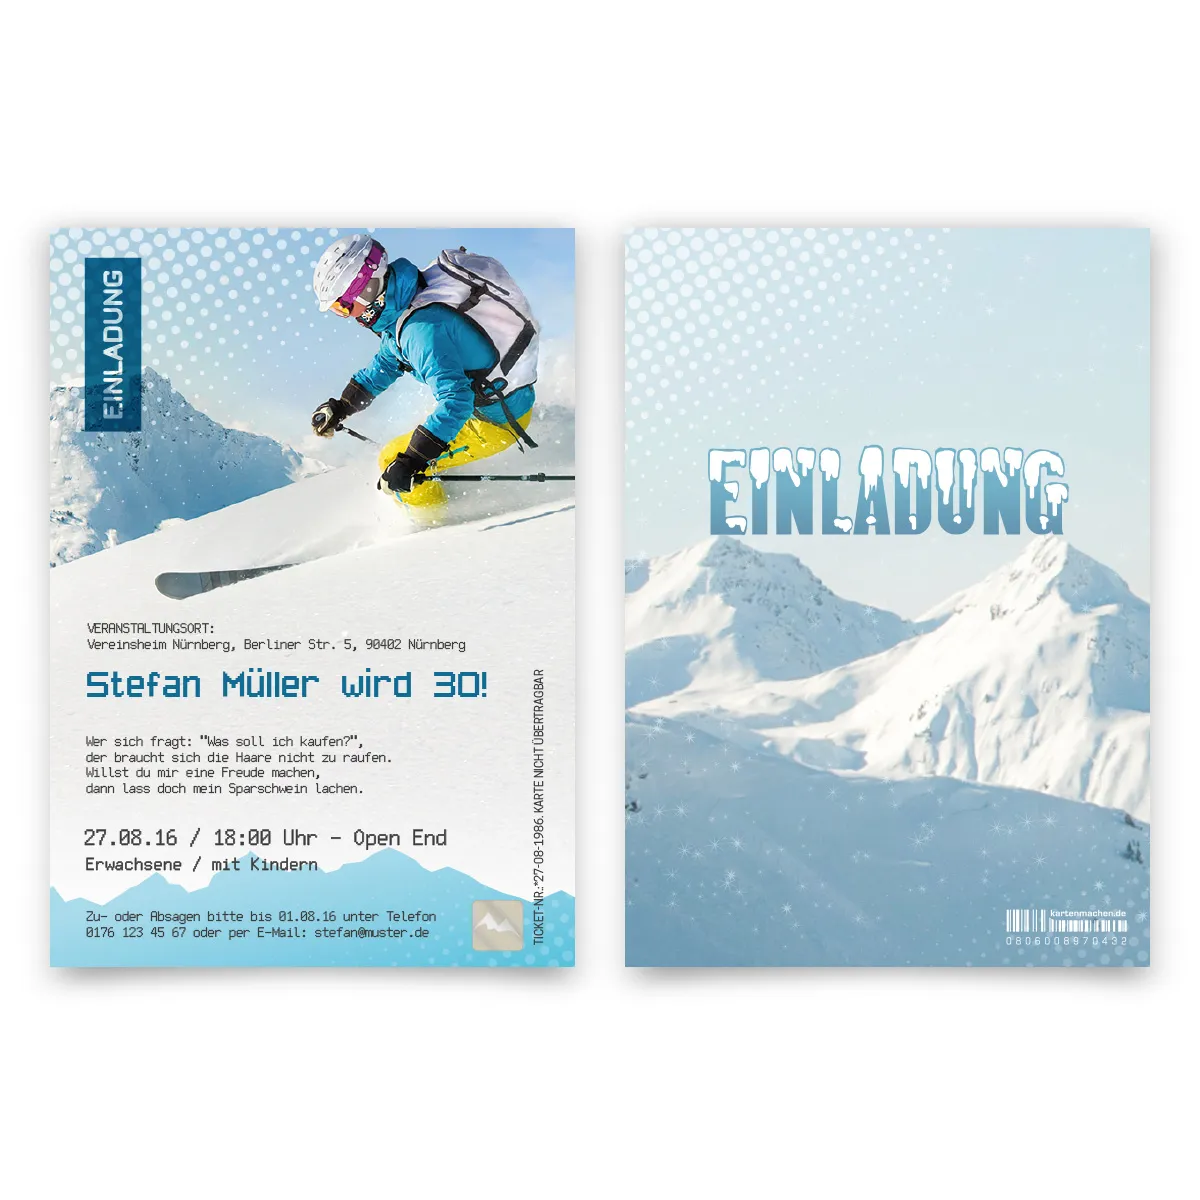 Einladungskarten als Skipass mit eigenem Foto